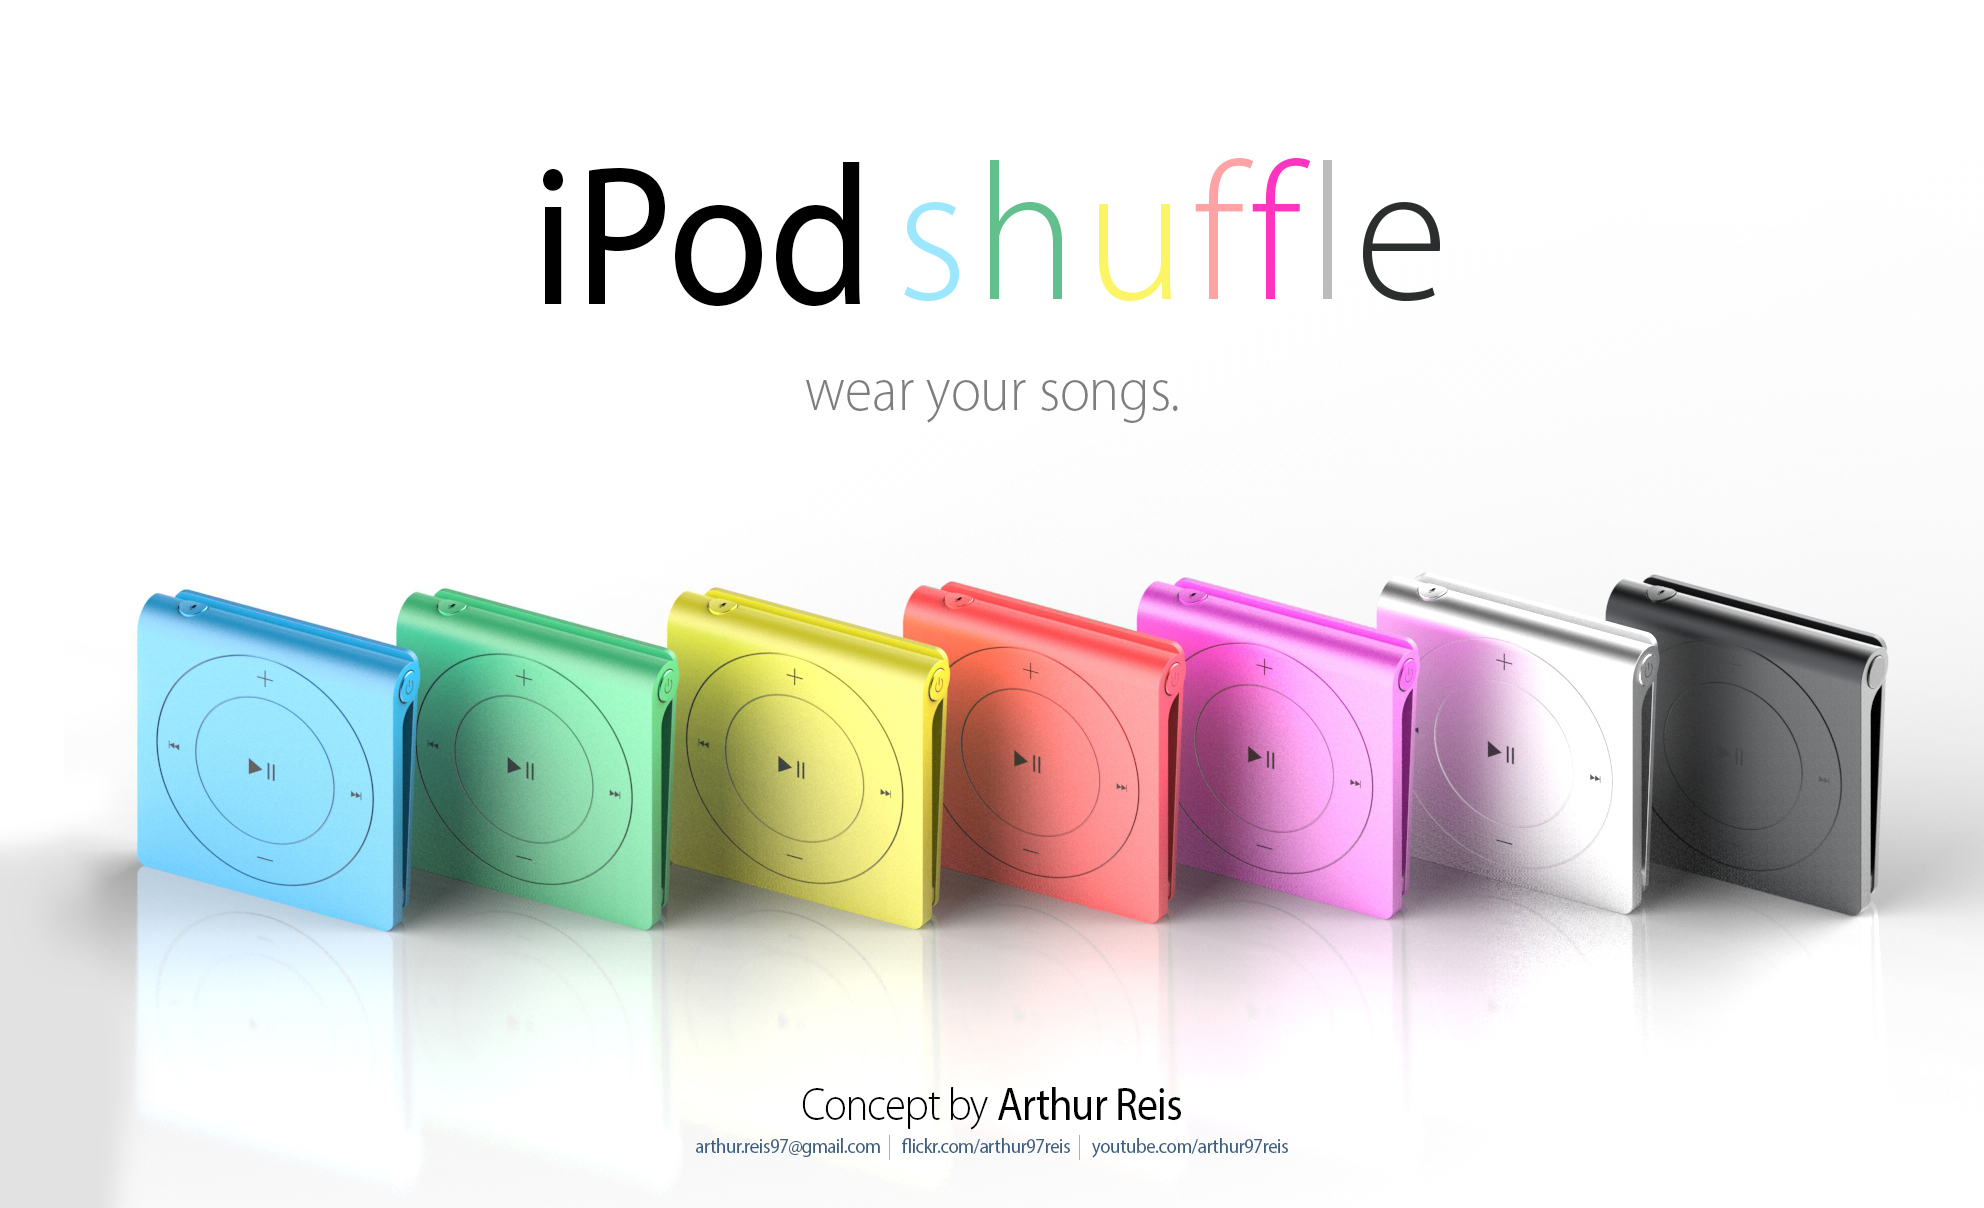 Conceito de novo iPod shuffle